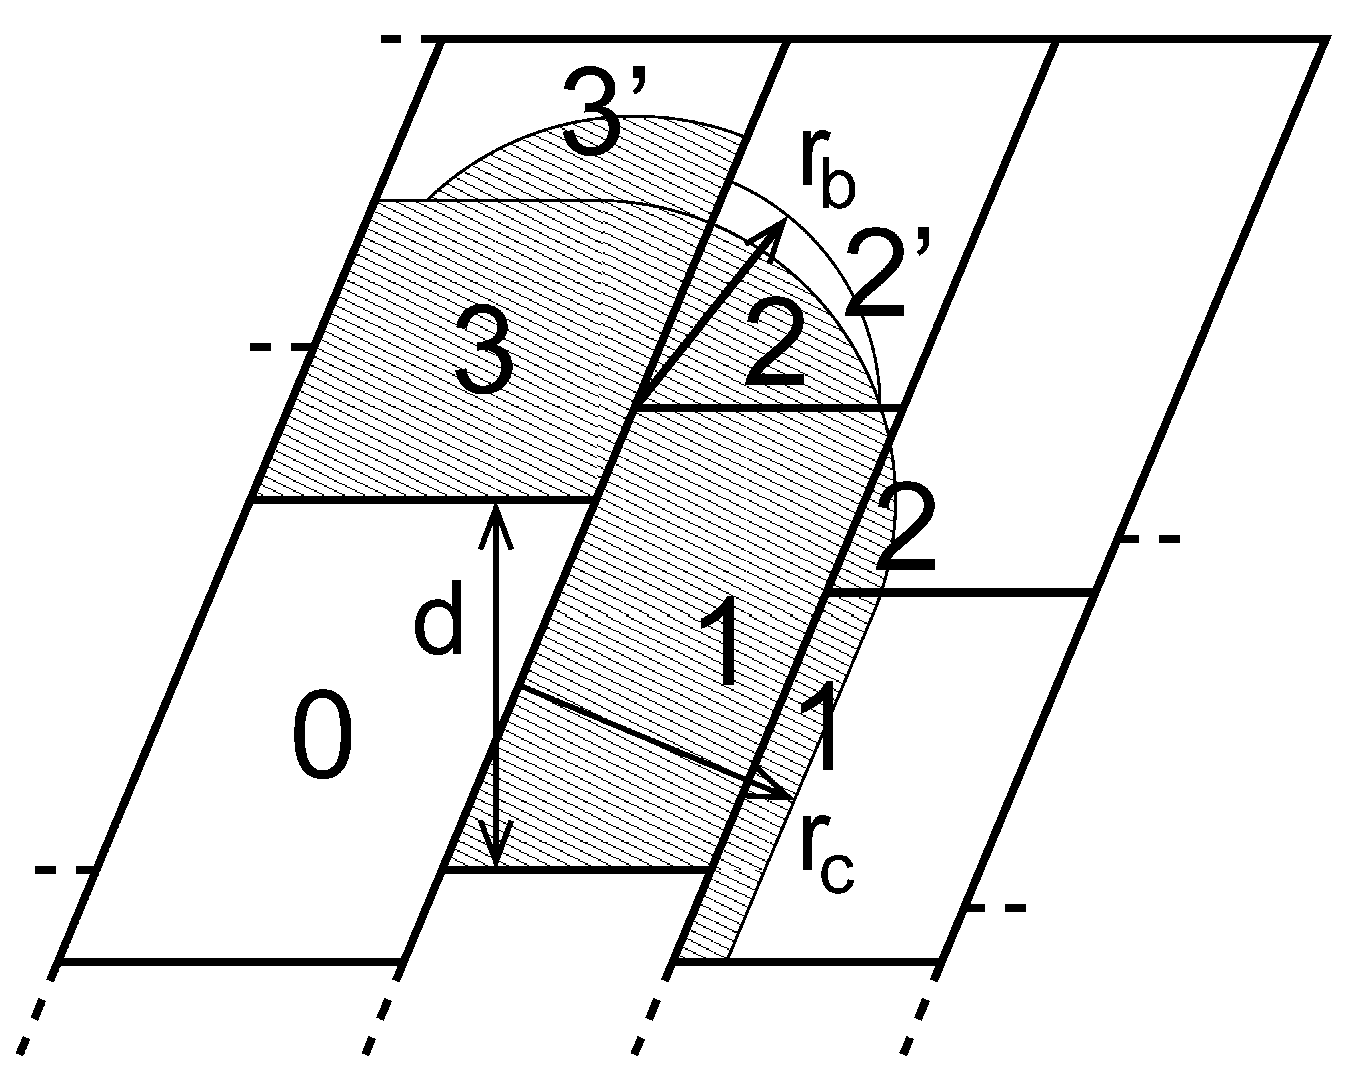 图3.13: 通讯到区域0队列的各个区域, 详情见正文. $r_c$ 和 $r_b$ 分别为非键截断半径和键合截断半径, $d$ 为晶胞交错边界之间的距离.